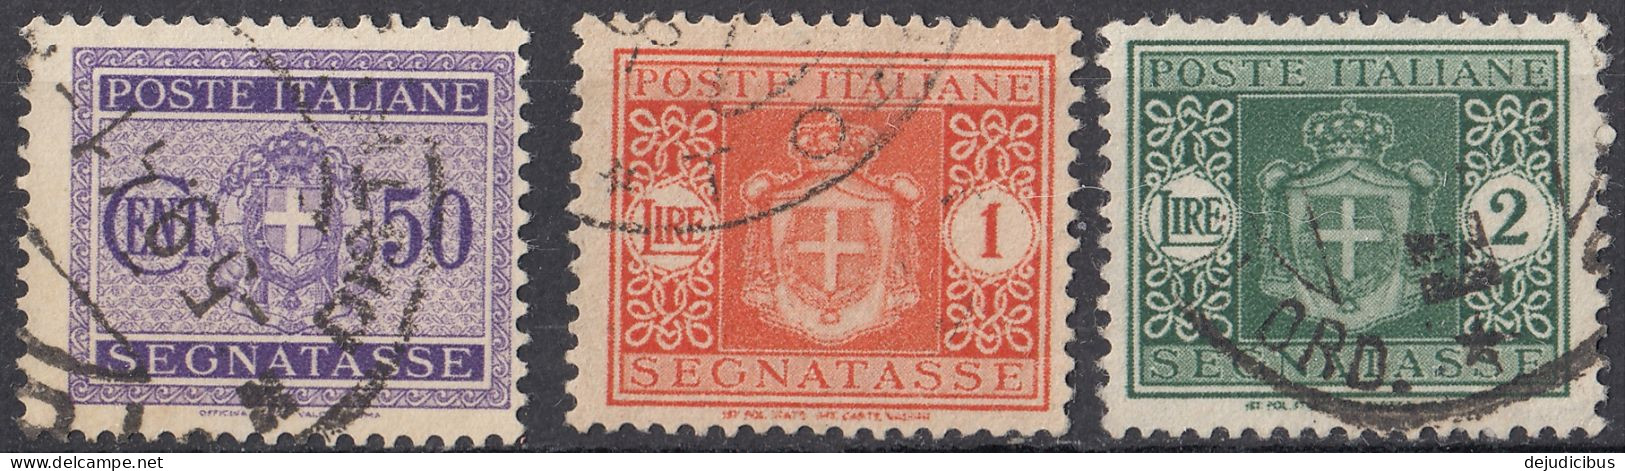 ITALIA - 1934 - Segnatasse -  Lotto Di 3 Valori Usati: Yvert  34, 36 E 37. - Postage Due